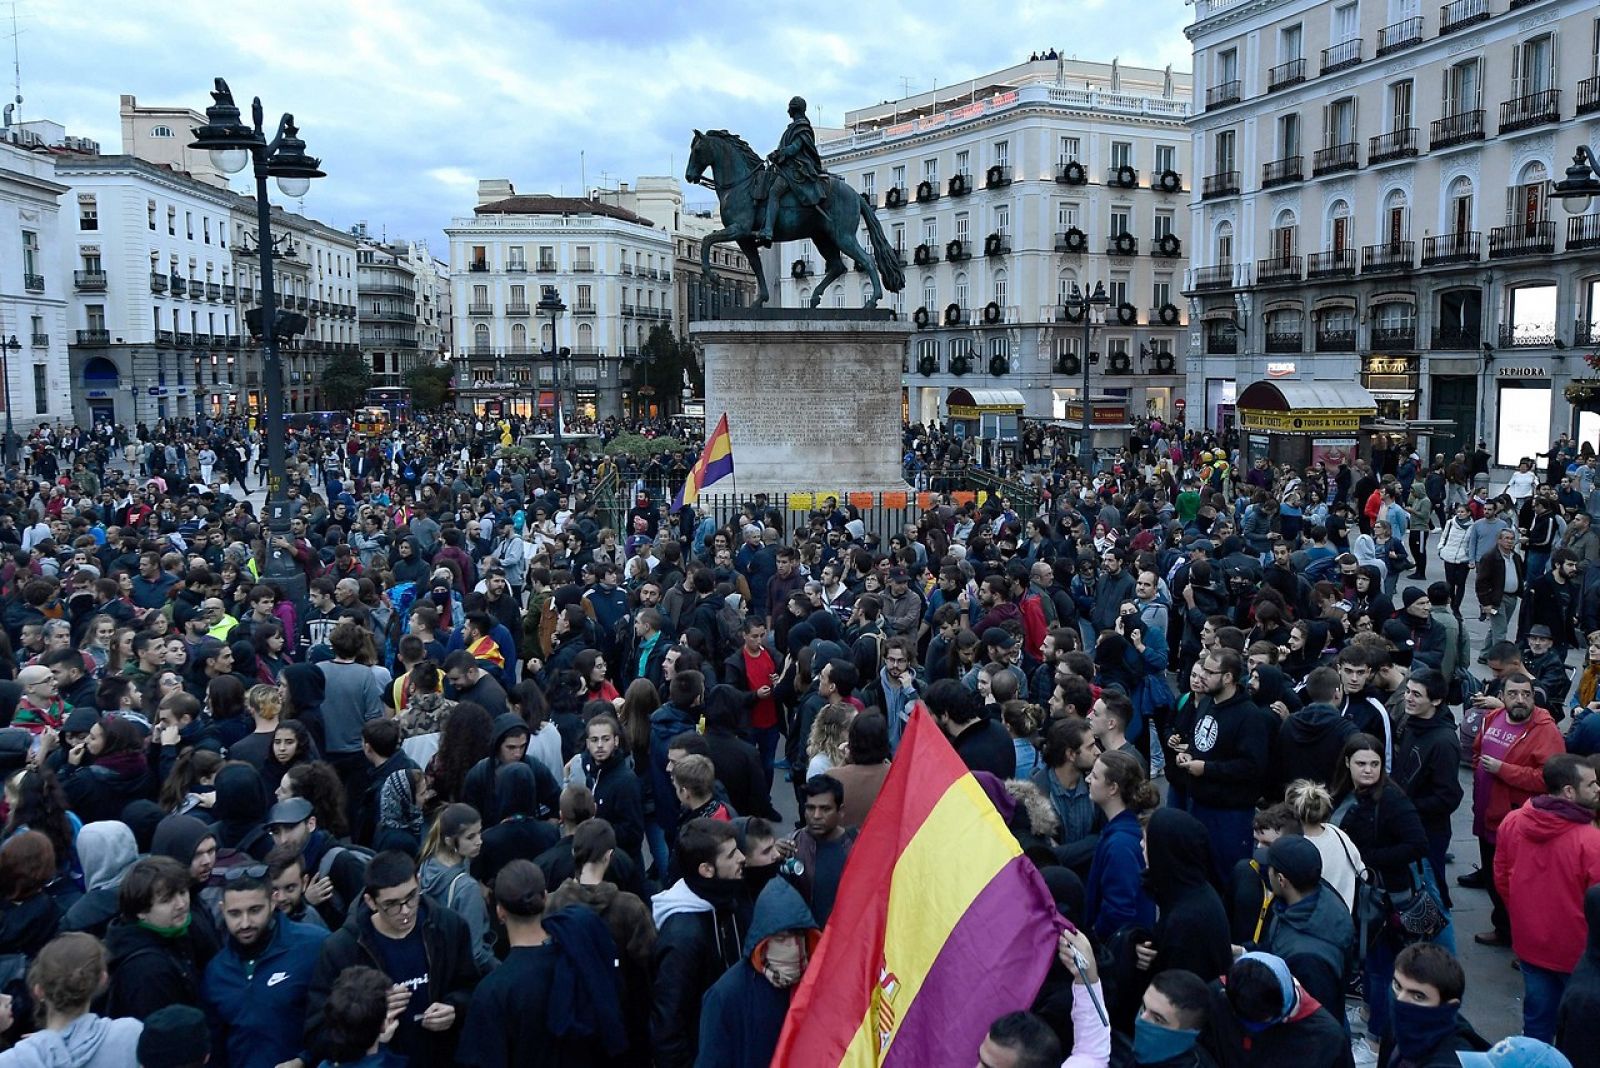 Un detenido y 13 heridos en Madrid tras la marcha por la "amnistía de todos los presos políticos" -RTVE.es